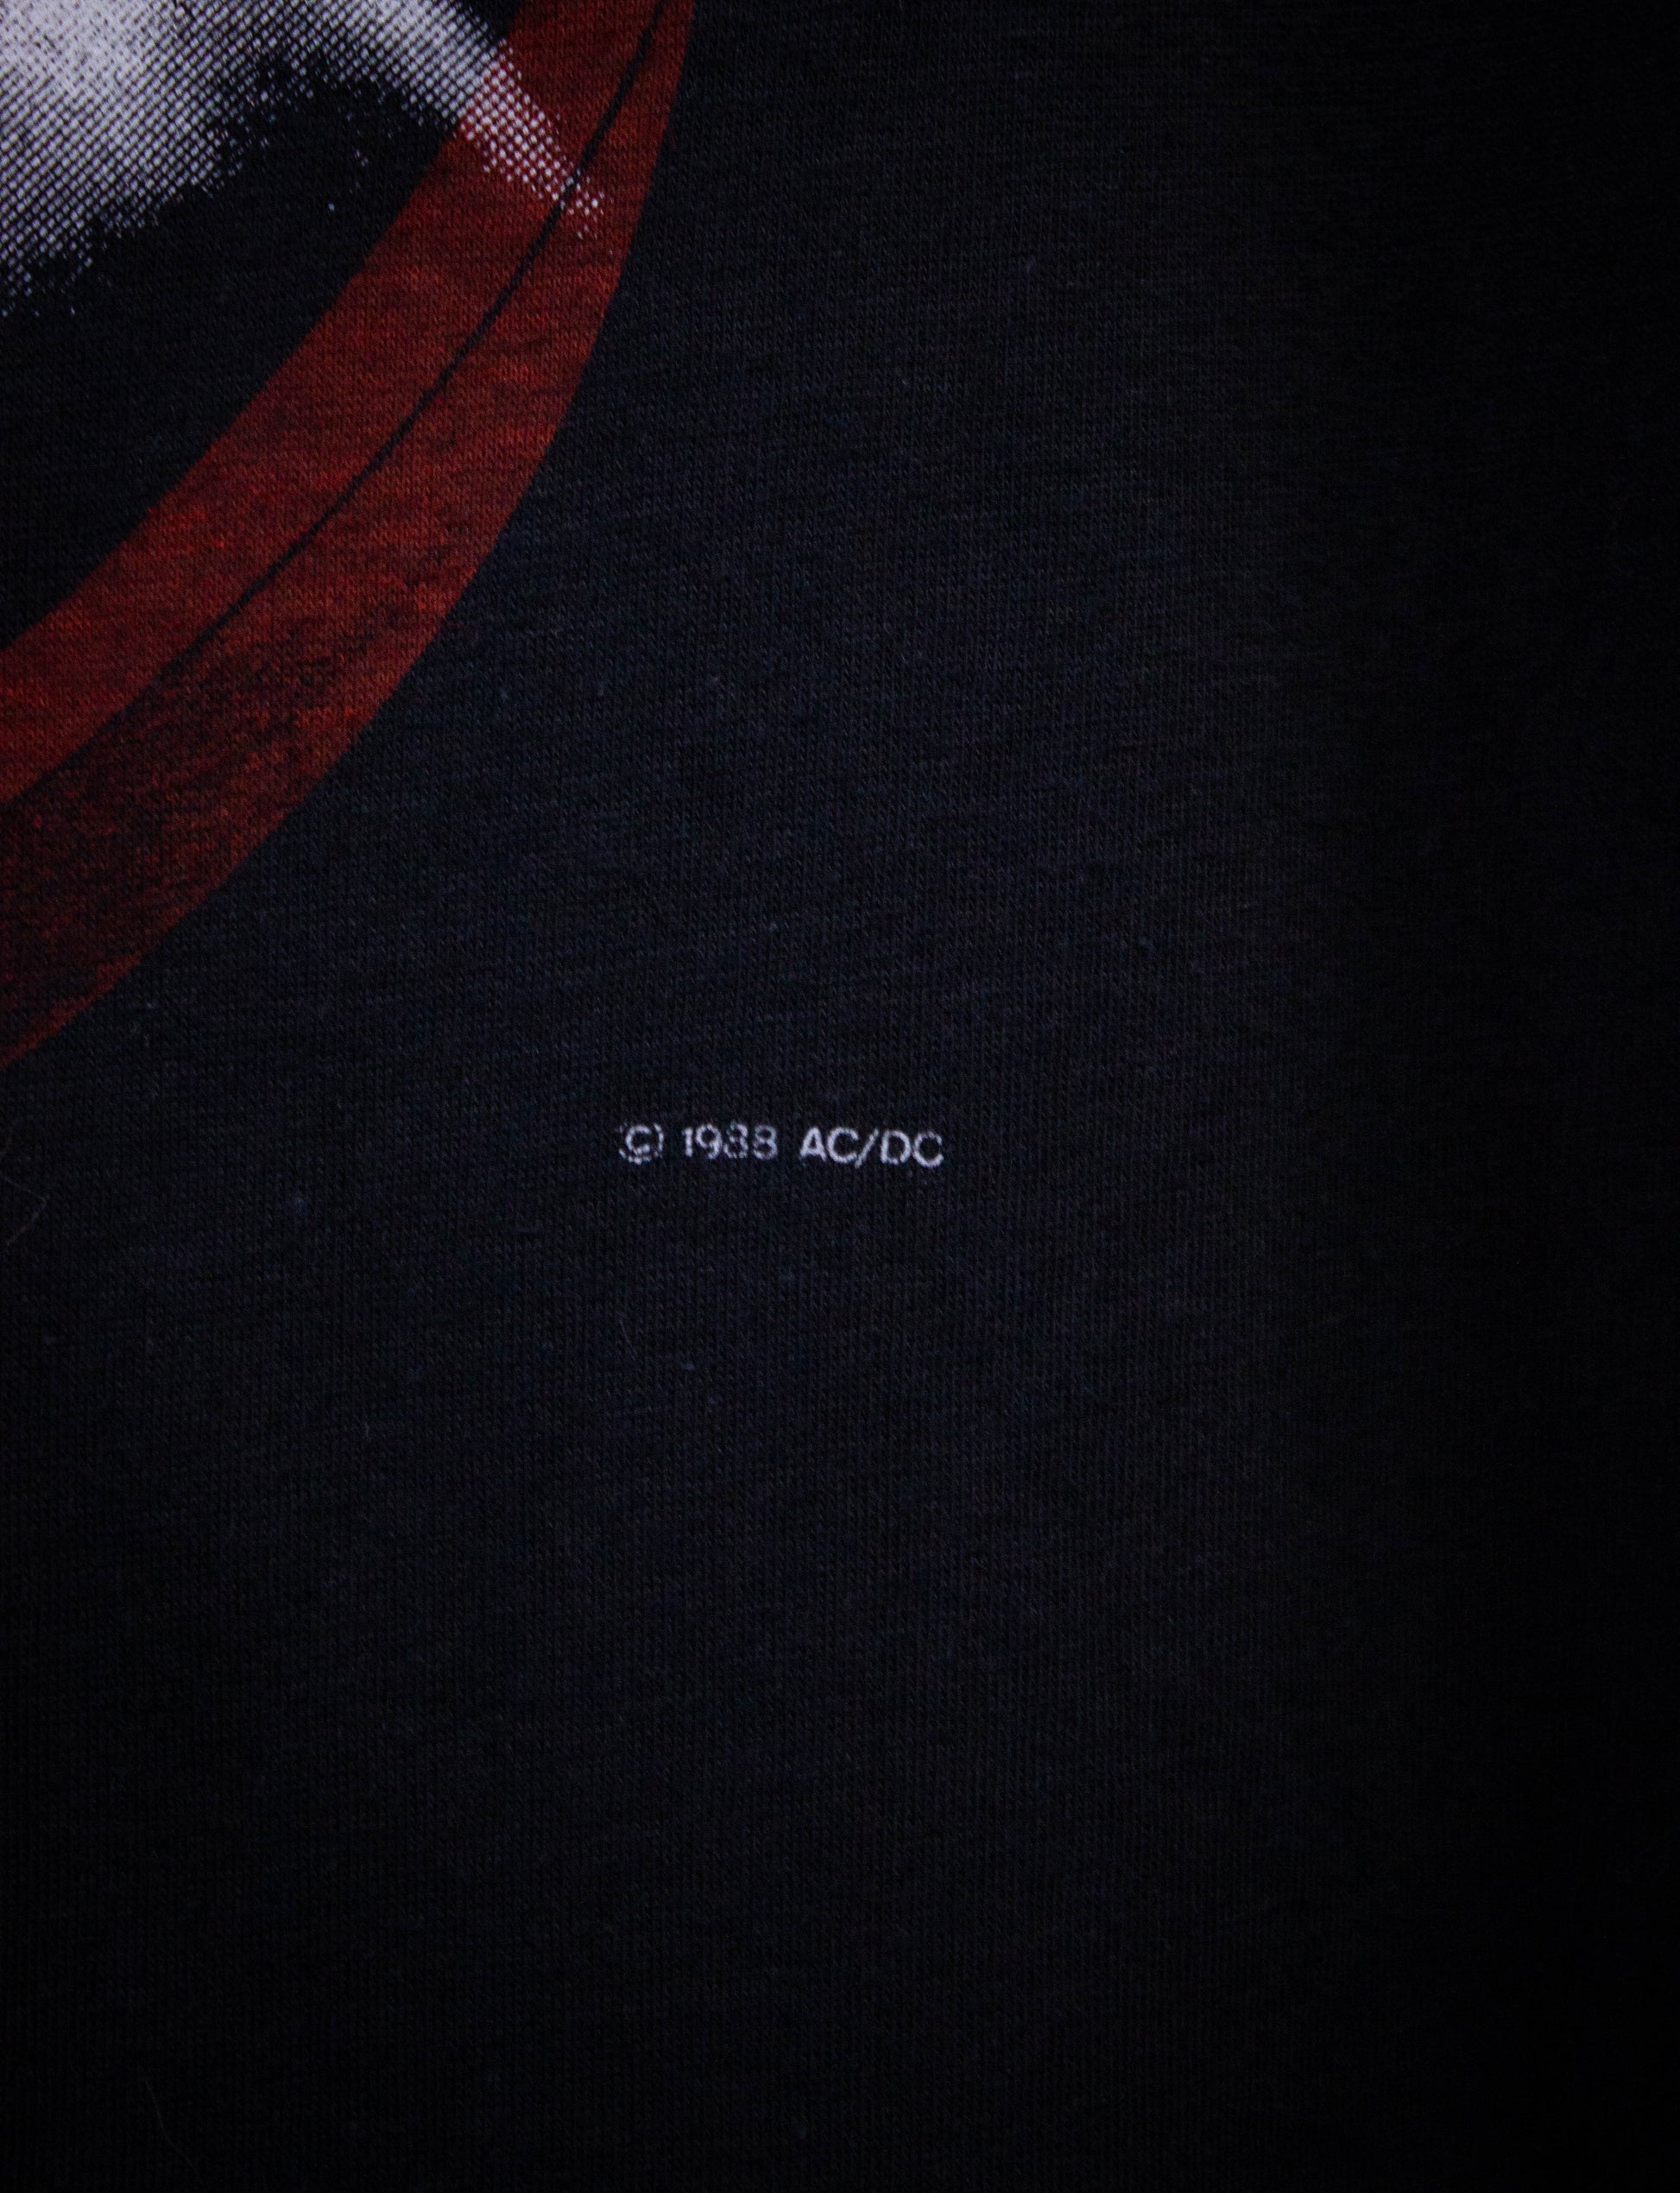 Vintage AC/DC Blow Up Your Video Concert T Shirt 1988 Black Large